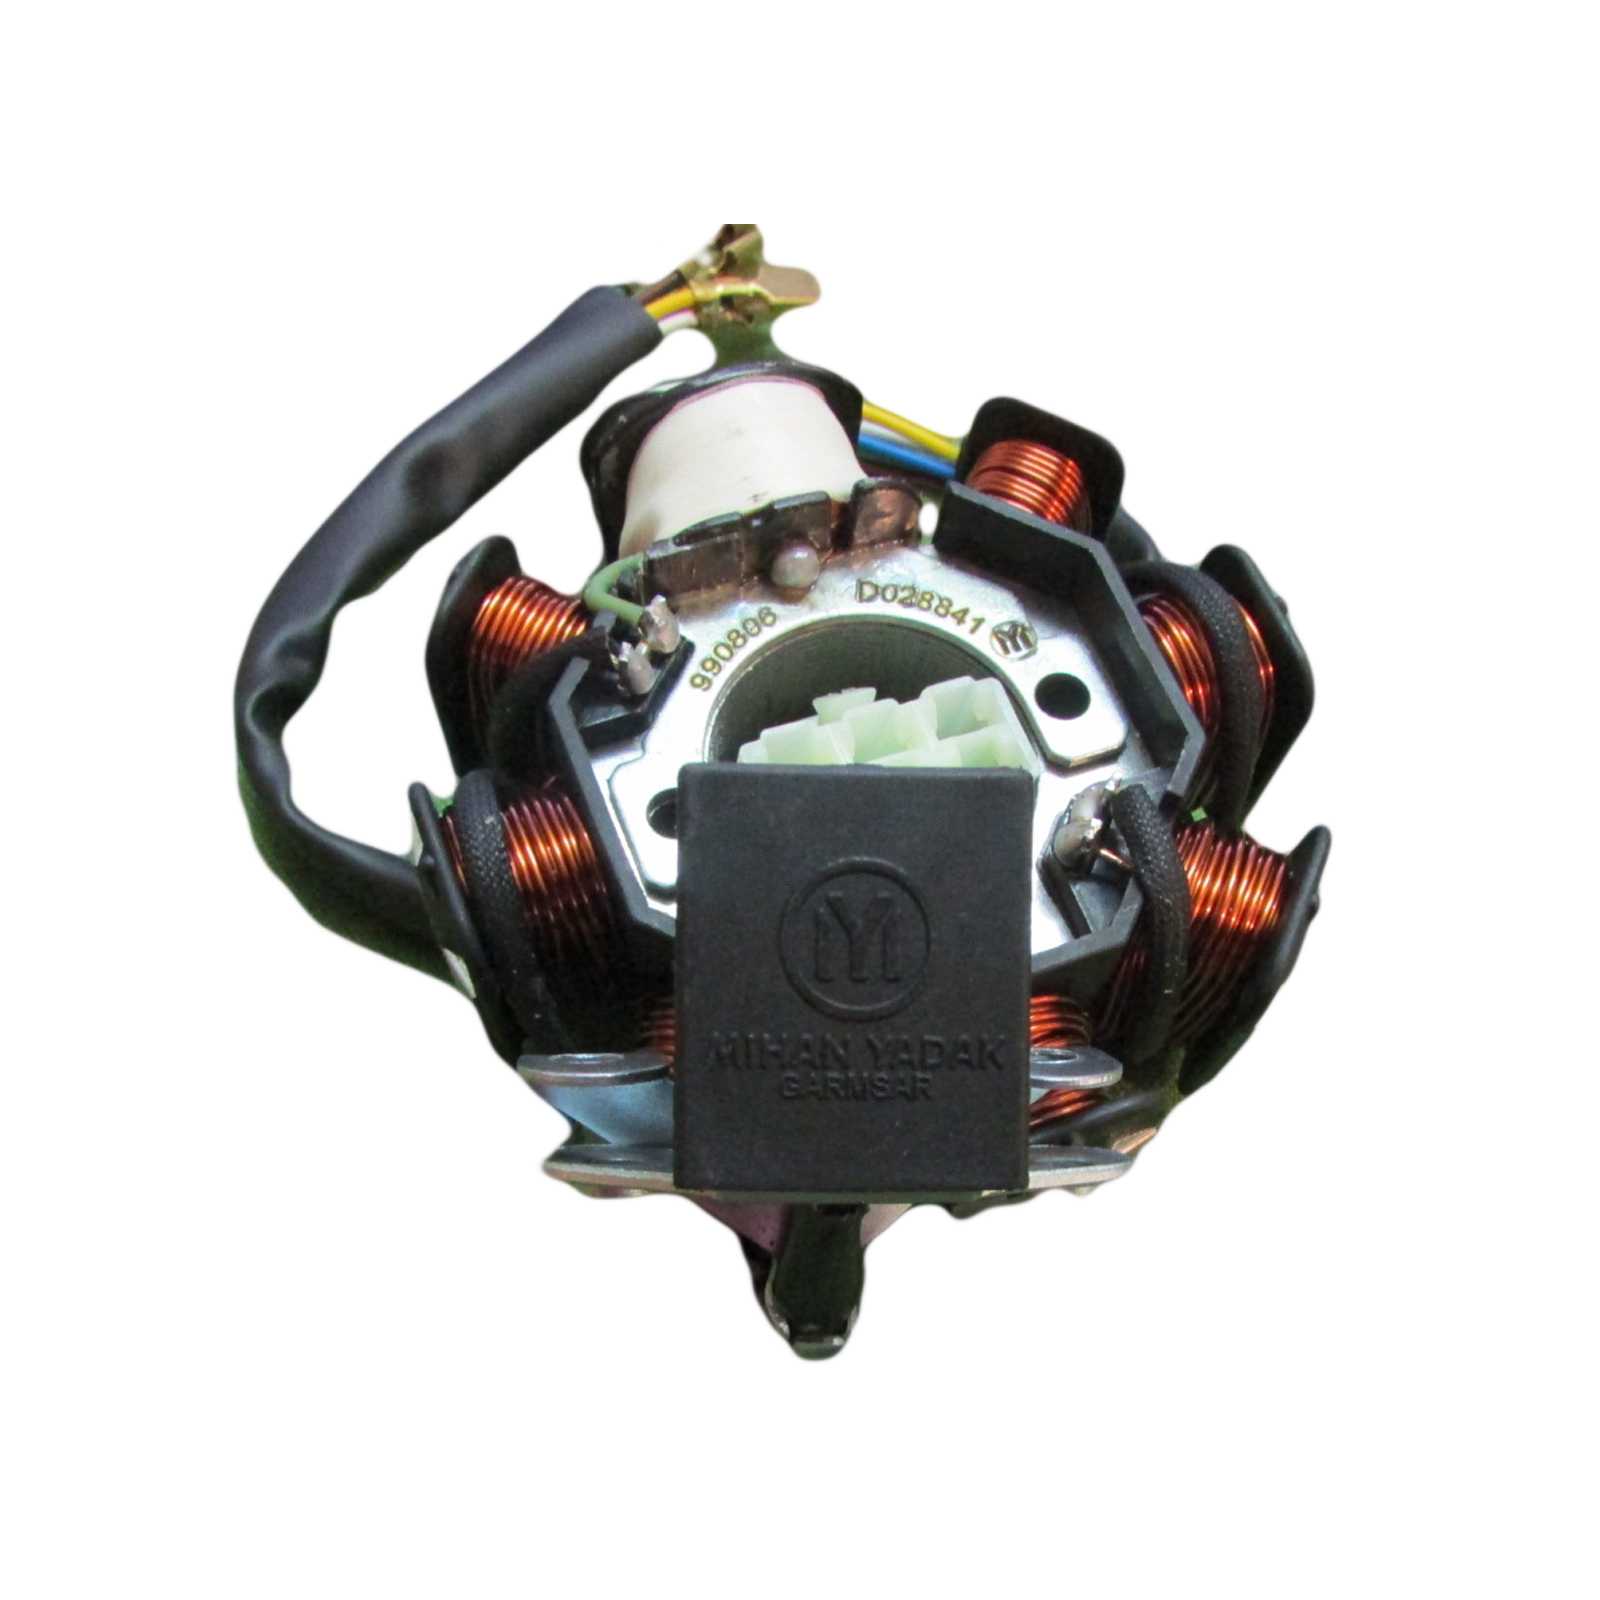 دستگاه برق موتور سیکلت گرمسار مدل داخل روغن کد D-A03A01A002 مناسب برای هوندا CDI